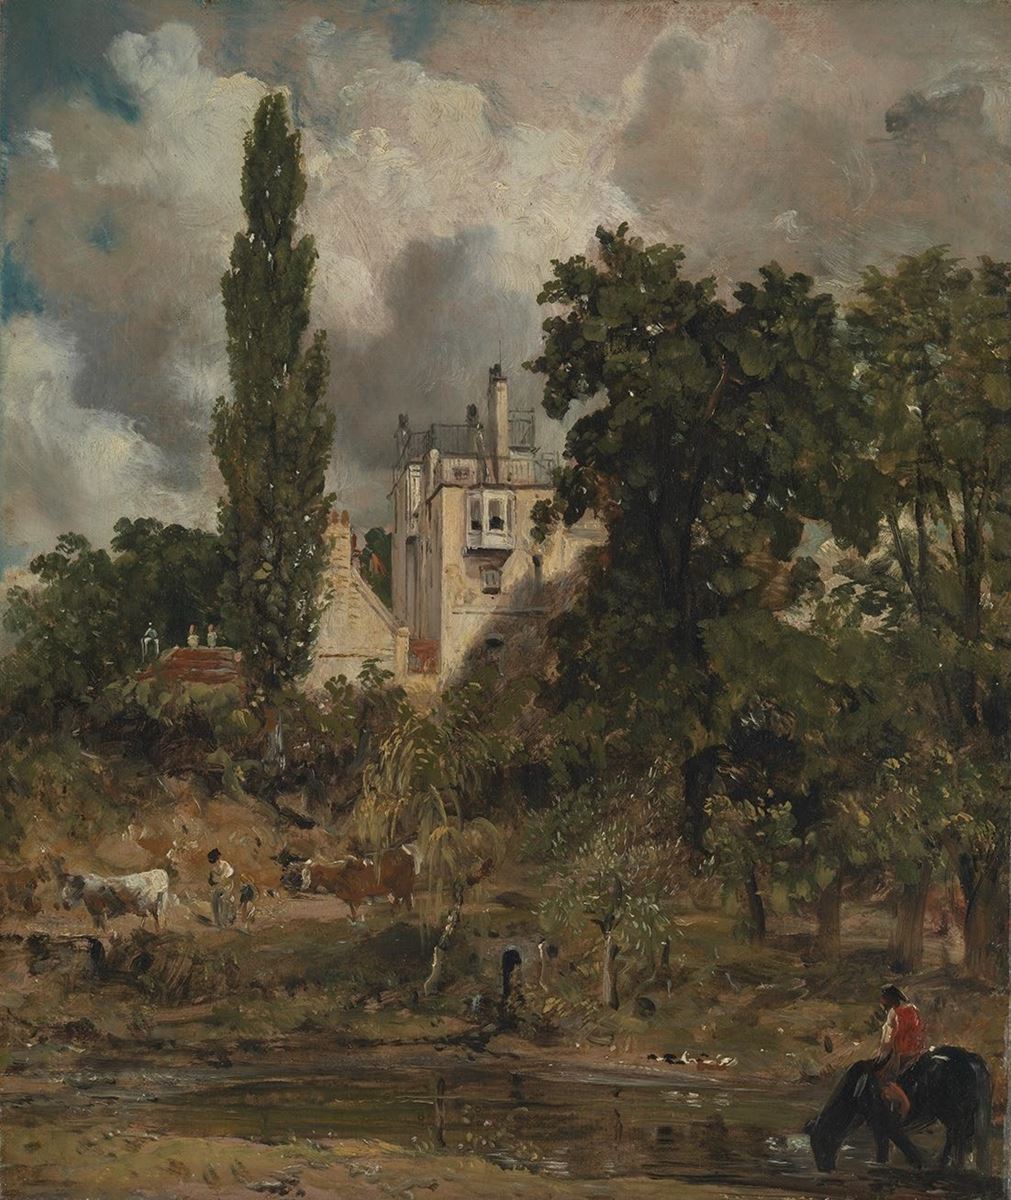 《ザ・グローヴの屋敷、ハムステッド》1821-22年頃、油彩／カンヴァス、35.6×30.2cm、テート美術館蔵 (C)Tate